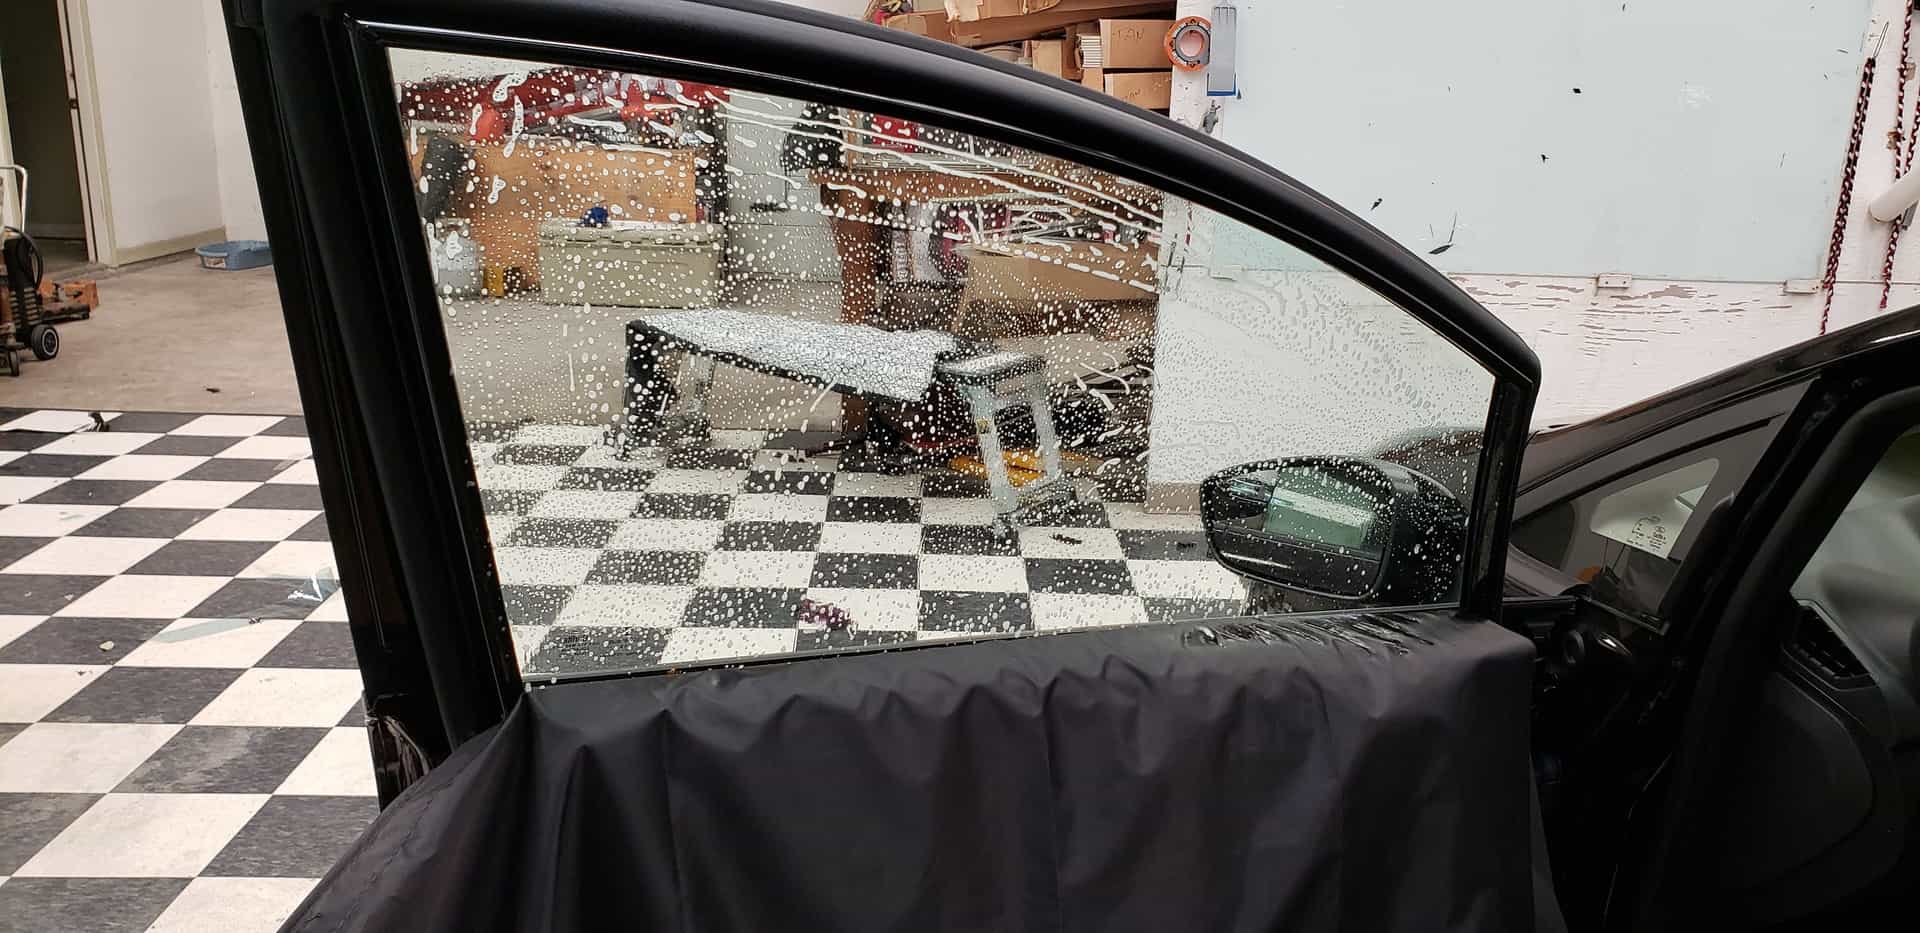 4 PCS Car Door Waterproof Cover for Window Tint Door Shield Protection  Guard Pad